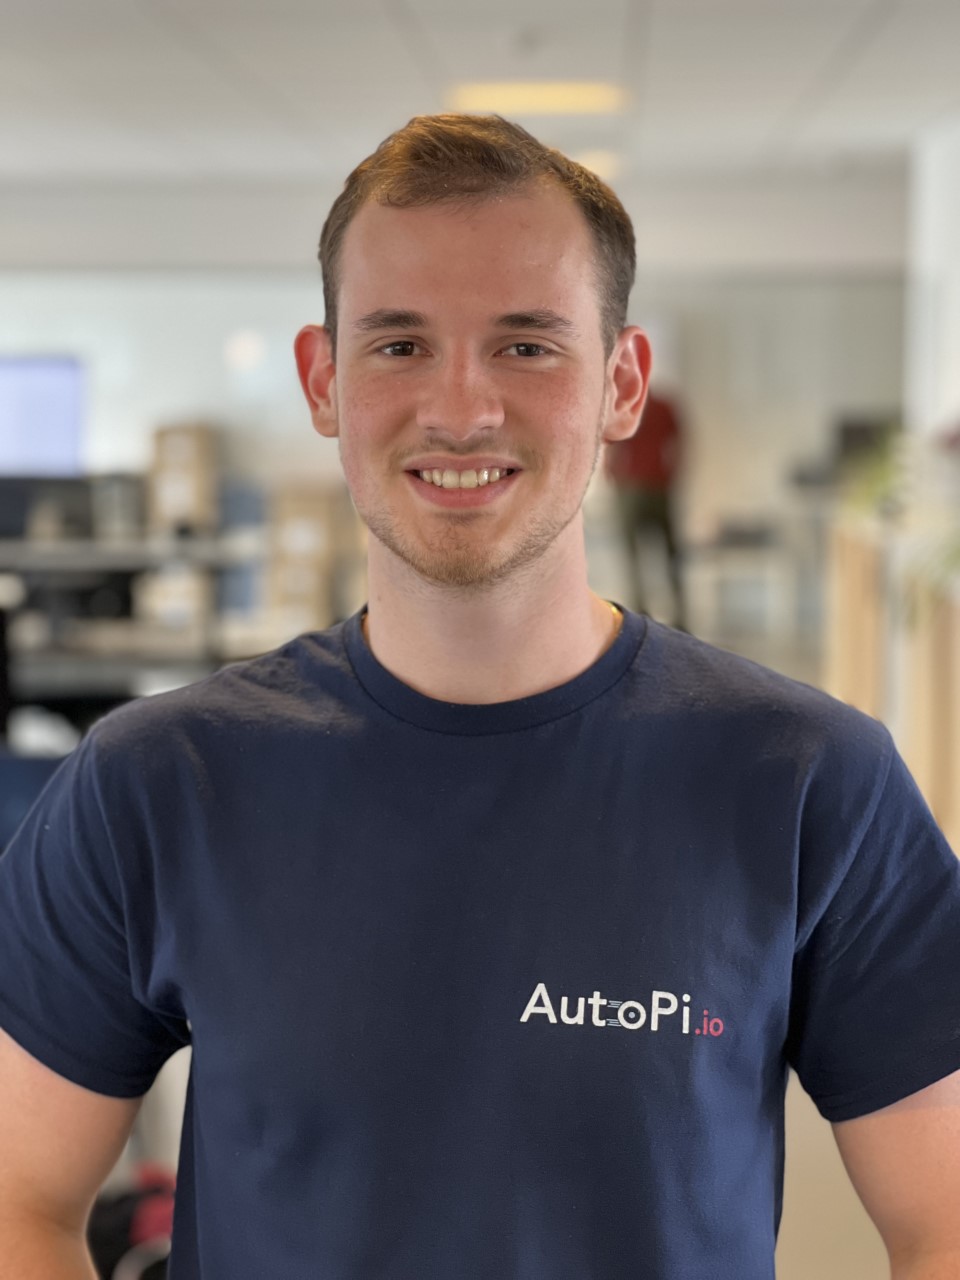 AutoPi.io - Software Developer / Support